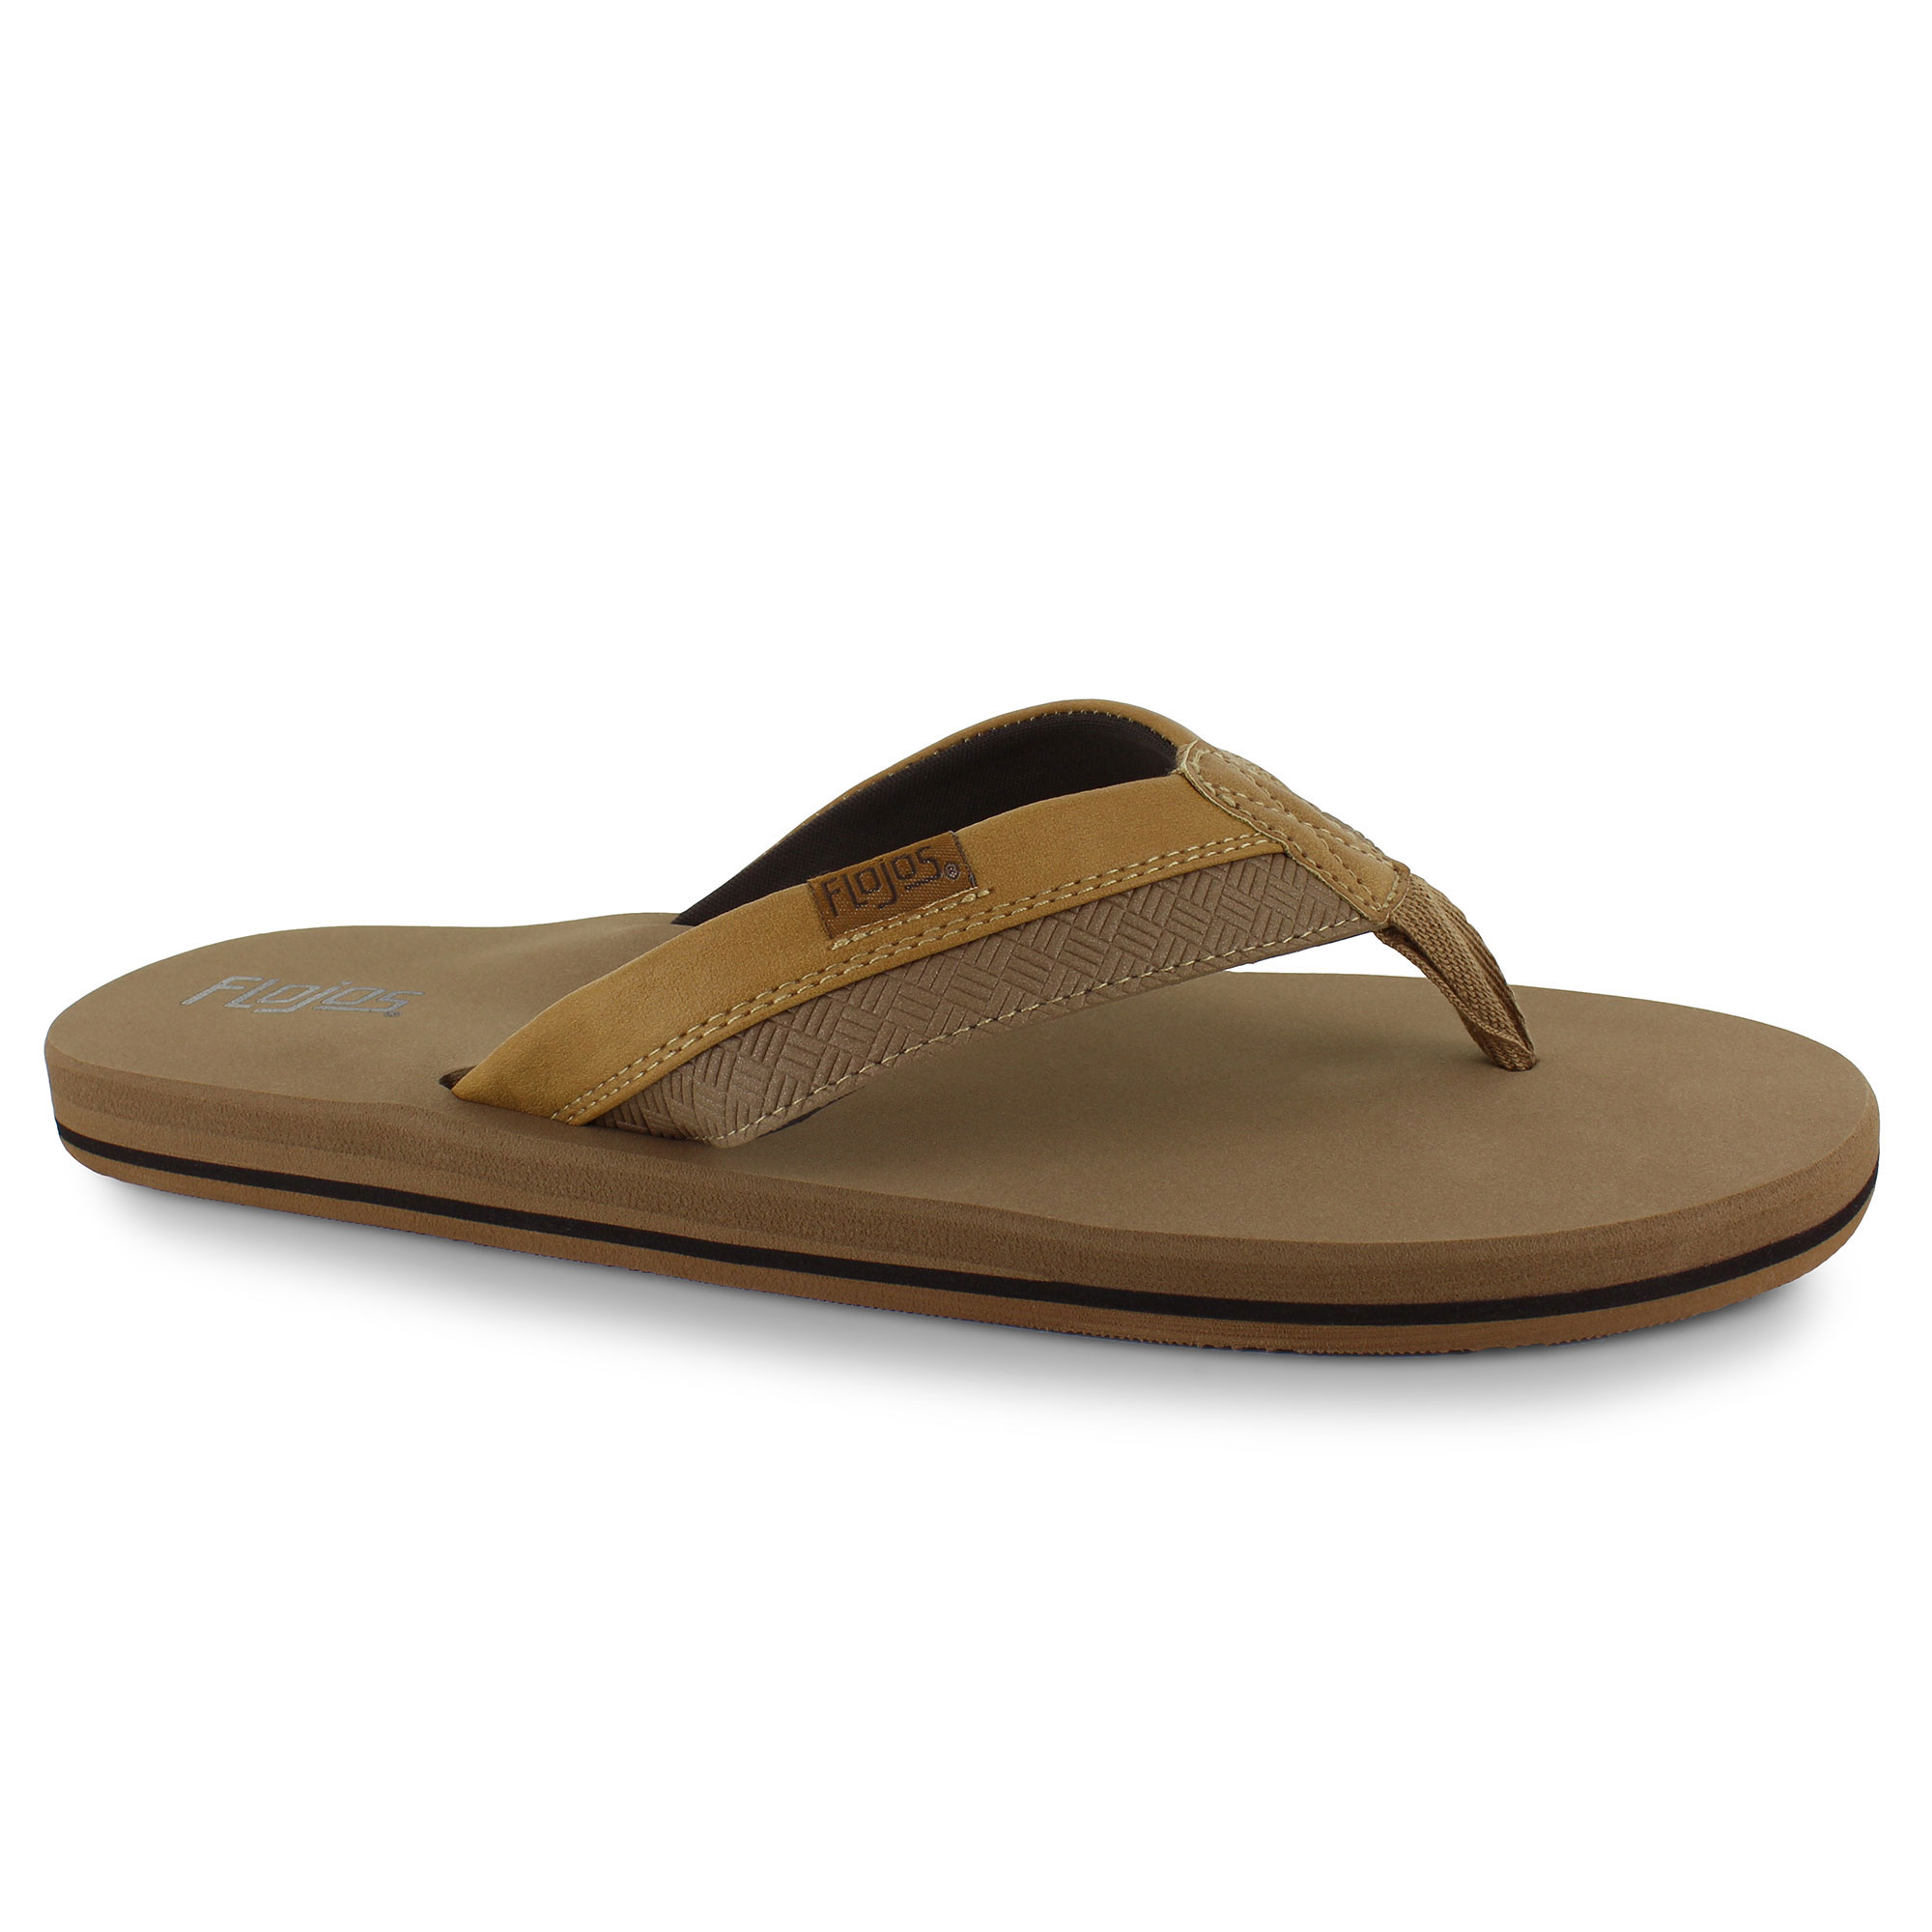 Men's Sandals | Shop Now at SHOE SHOW MEGA